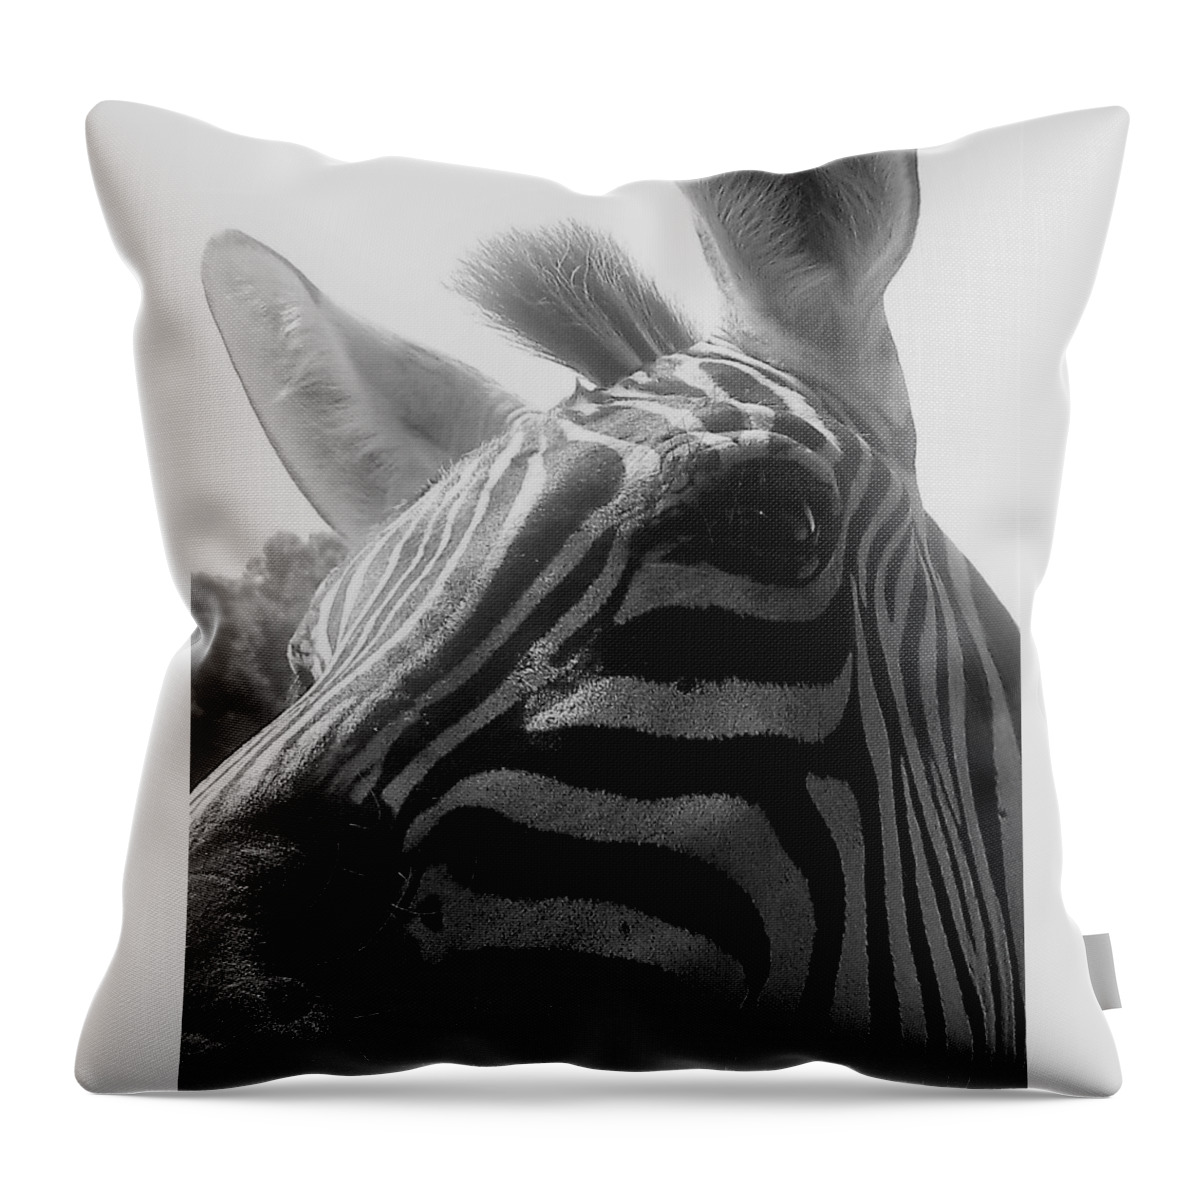 Zebra Throw Pillow featuring the photograph Zebra in black and white by Lois Tomaszewski